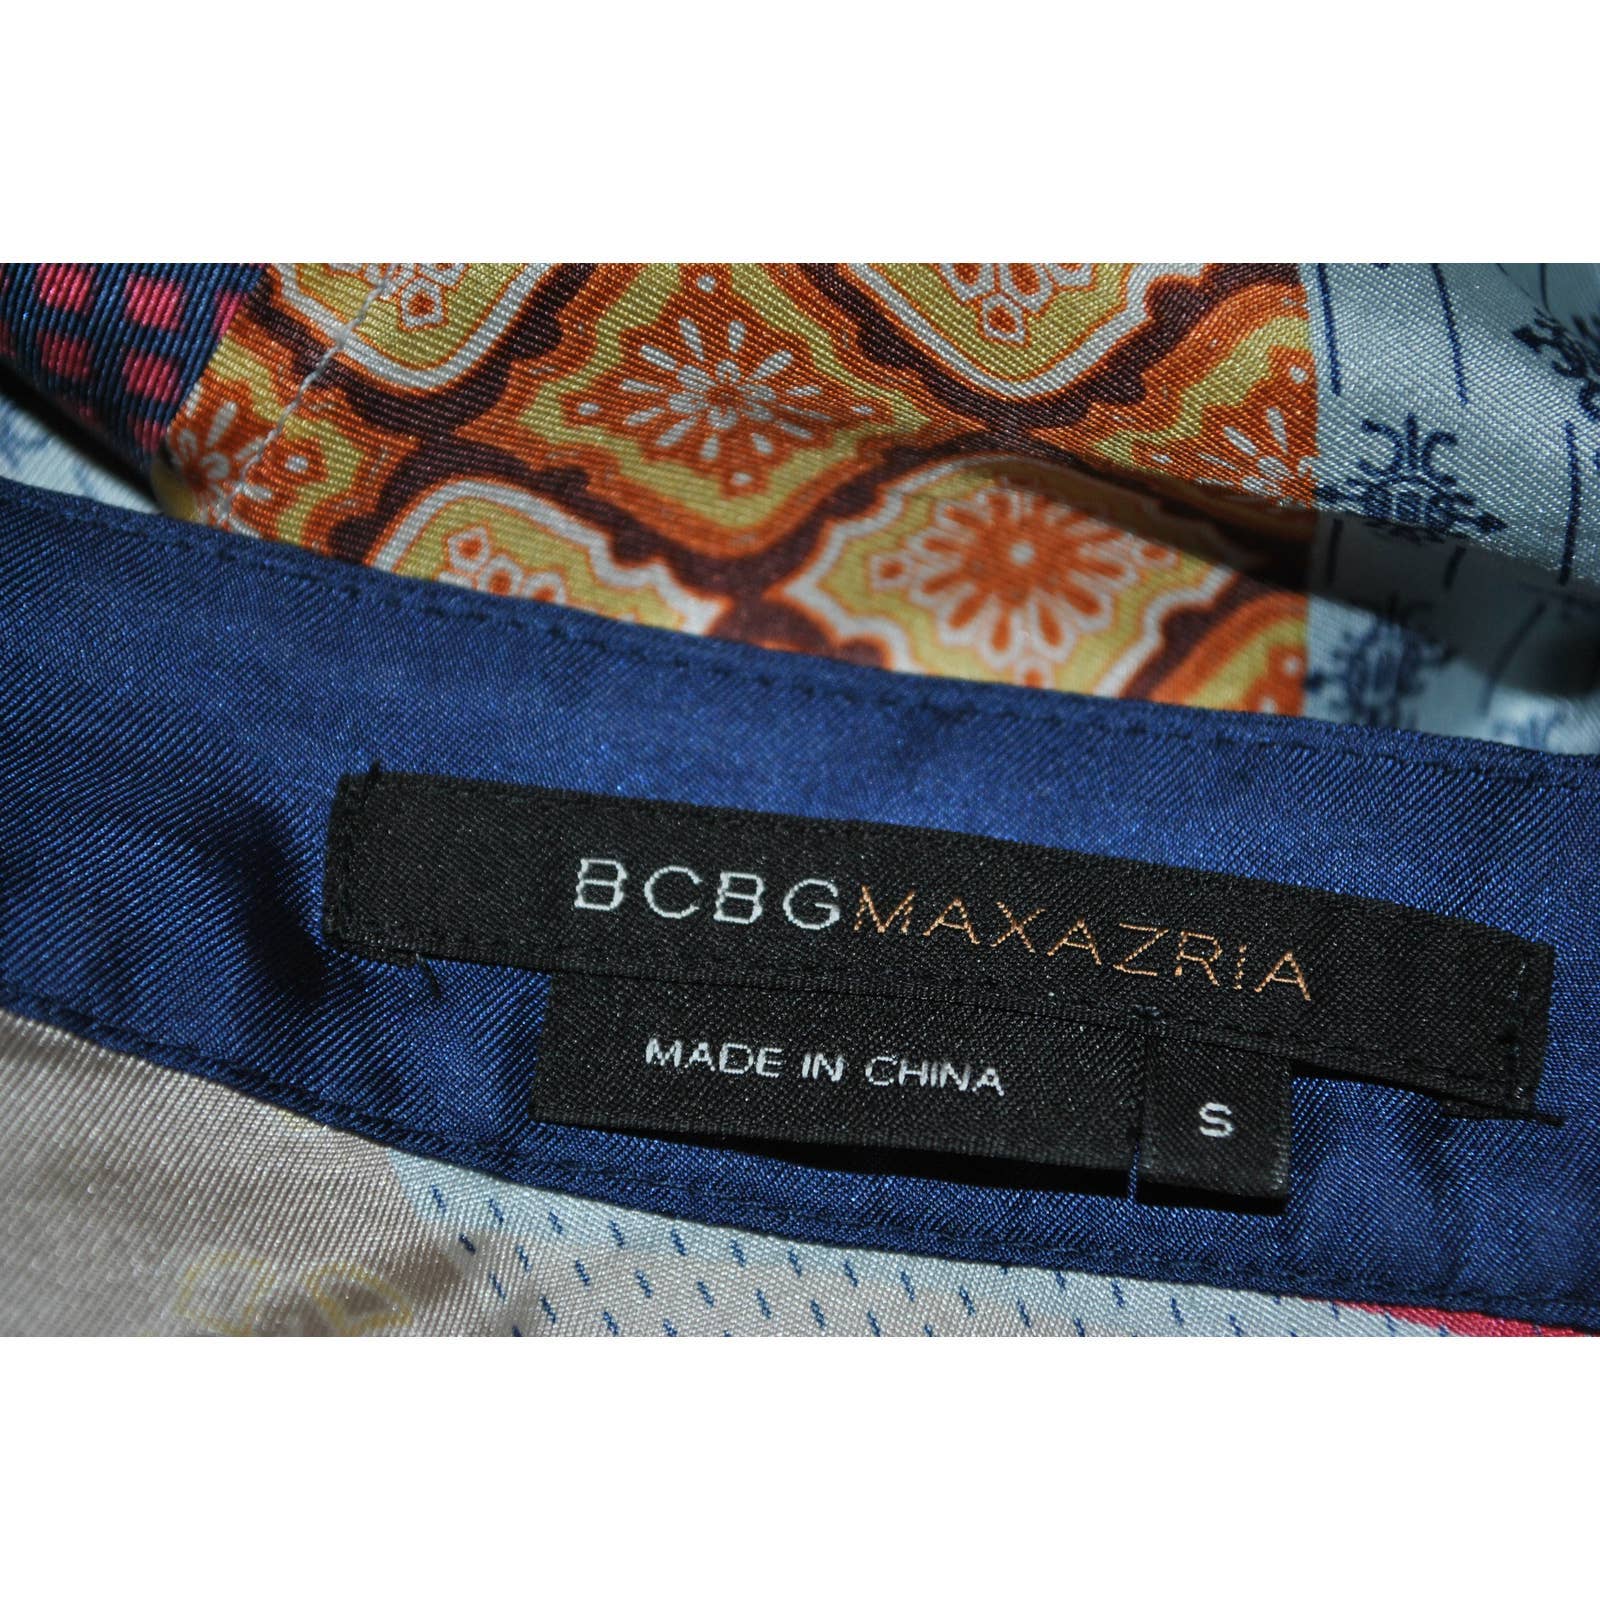 BCBGMaxazria Silk Multicolored Patterned Top - S